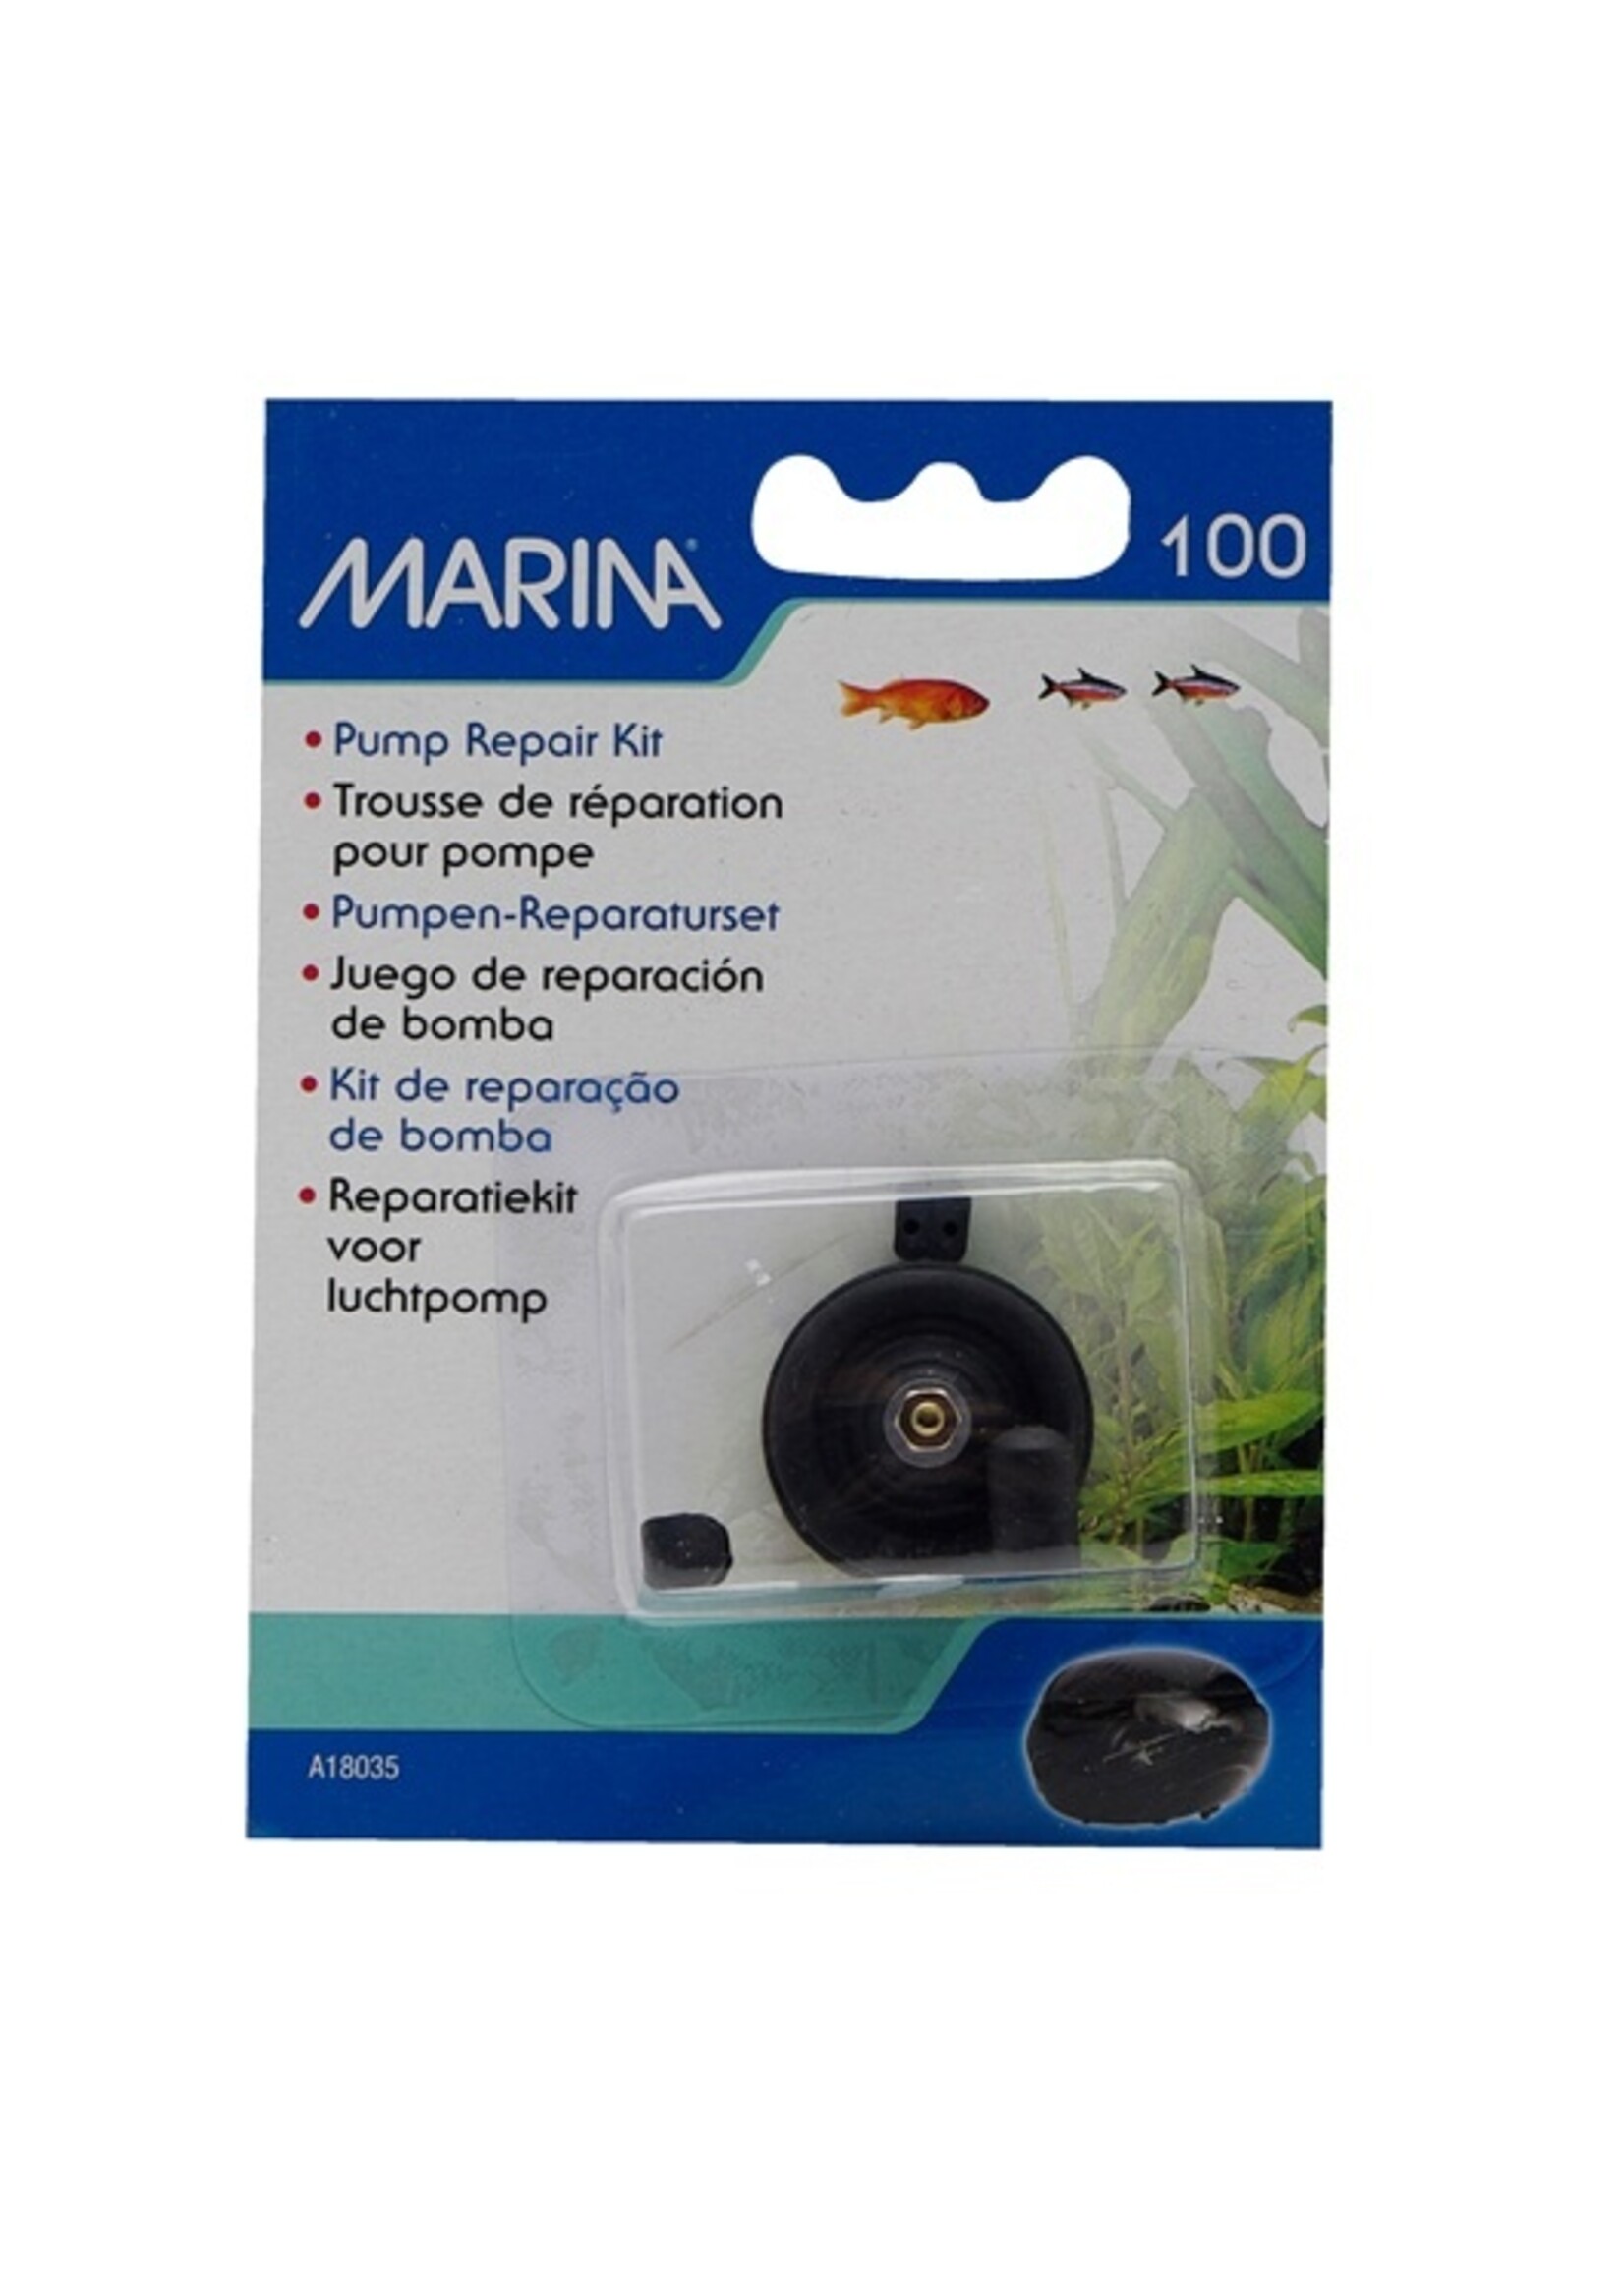 Marina Marina 100 Air Pump Repair Kit